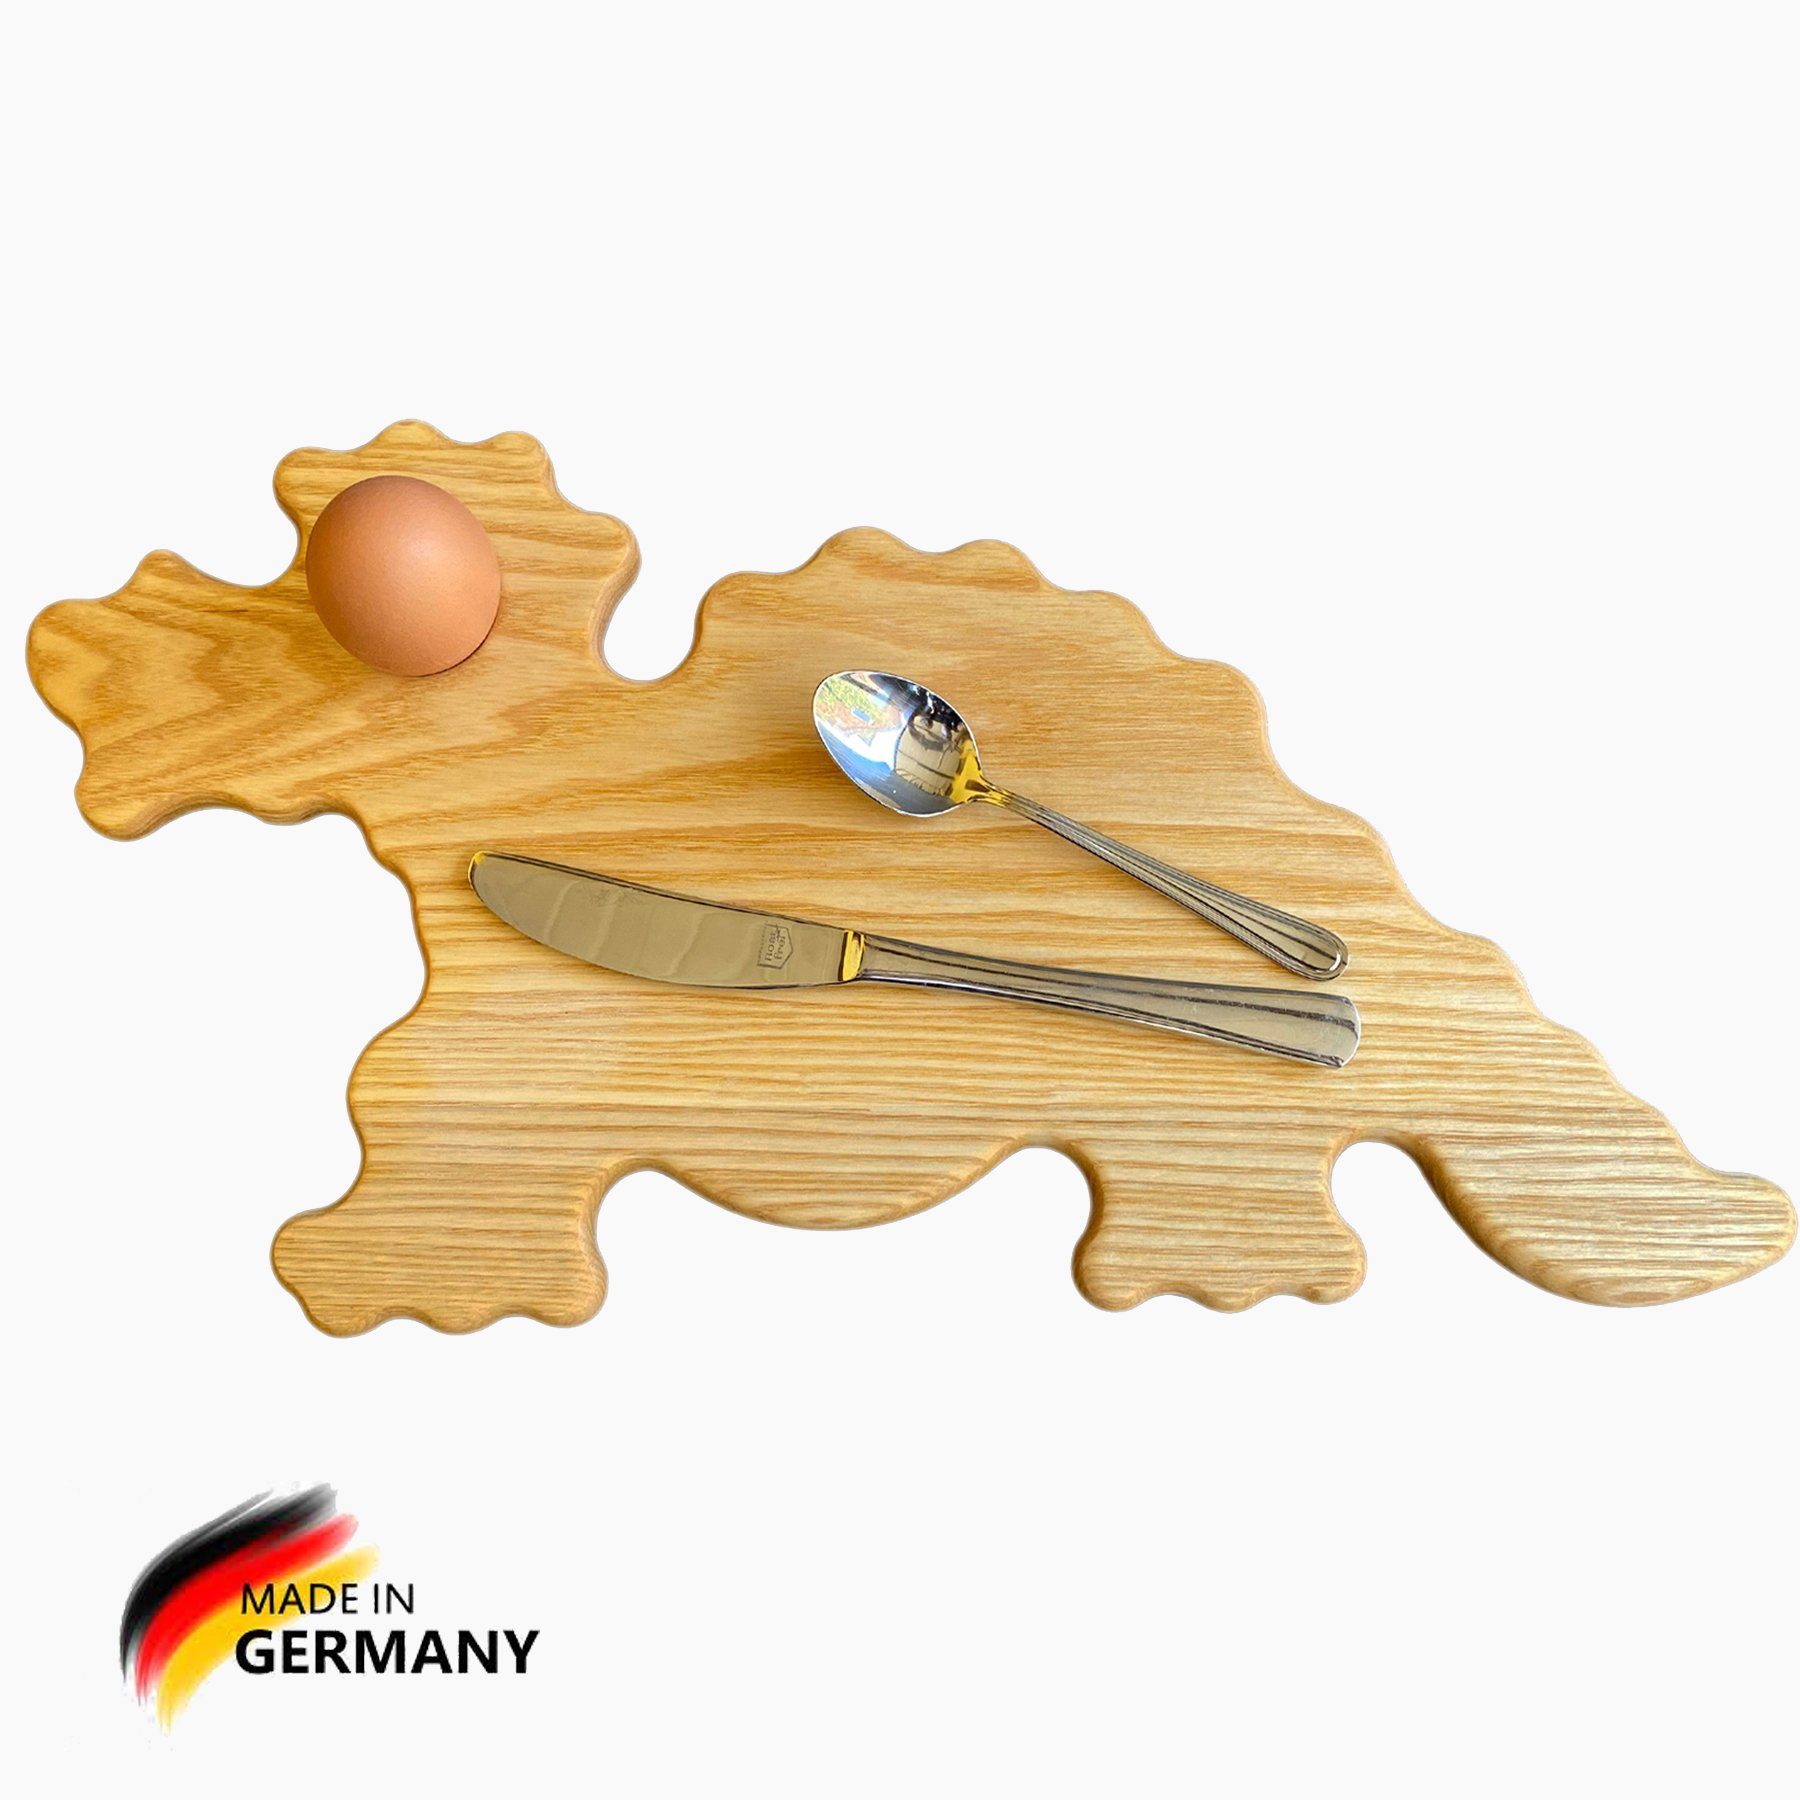 Germany Eierbecher. den 3-St), Frühstücksbrett (sparset, Set., Madera Eschenholz, Mit 3er Made Drache Frühstücksbrettchen Ei spart Spielzeuge in Loch,